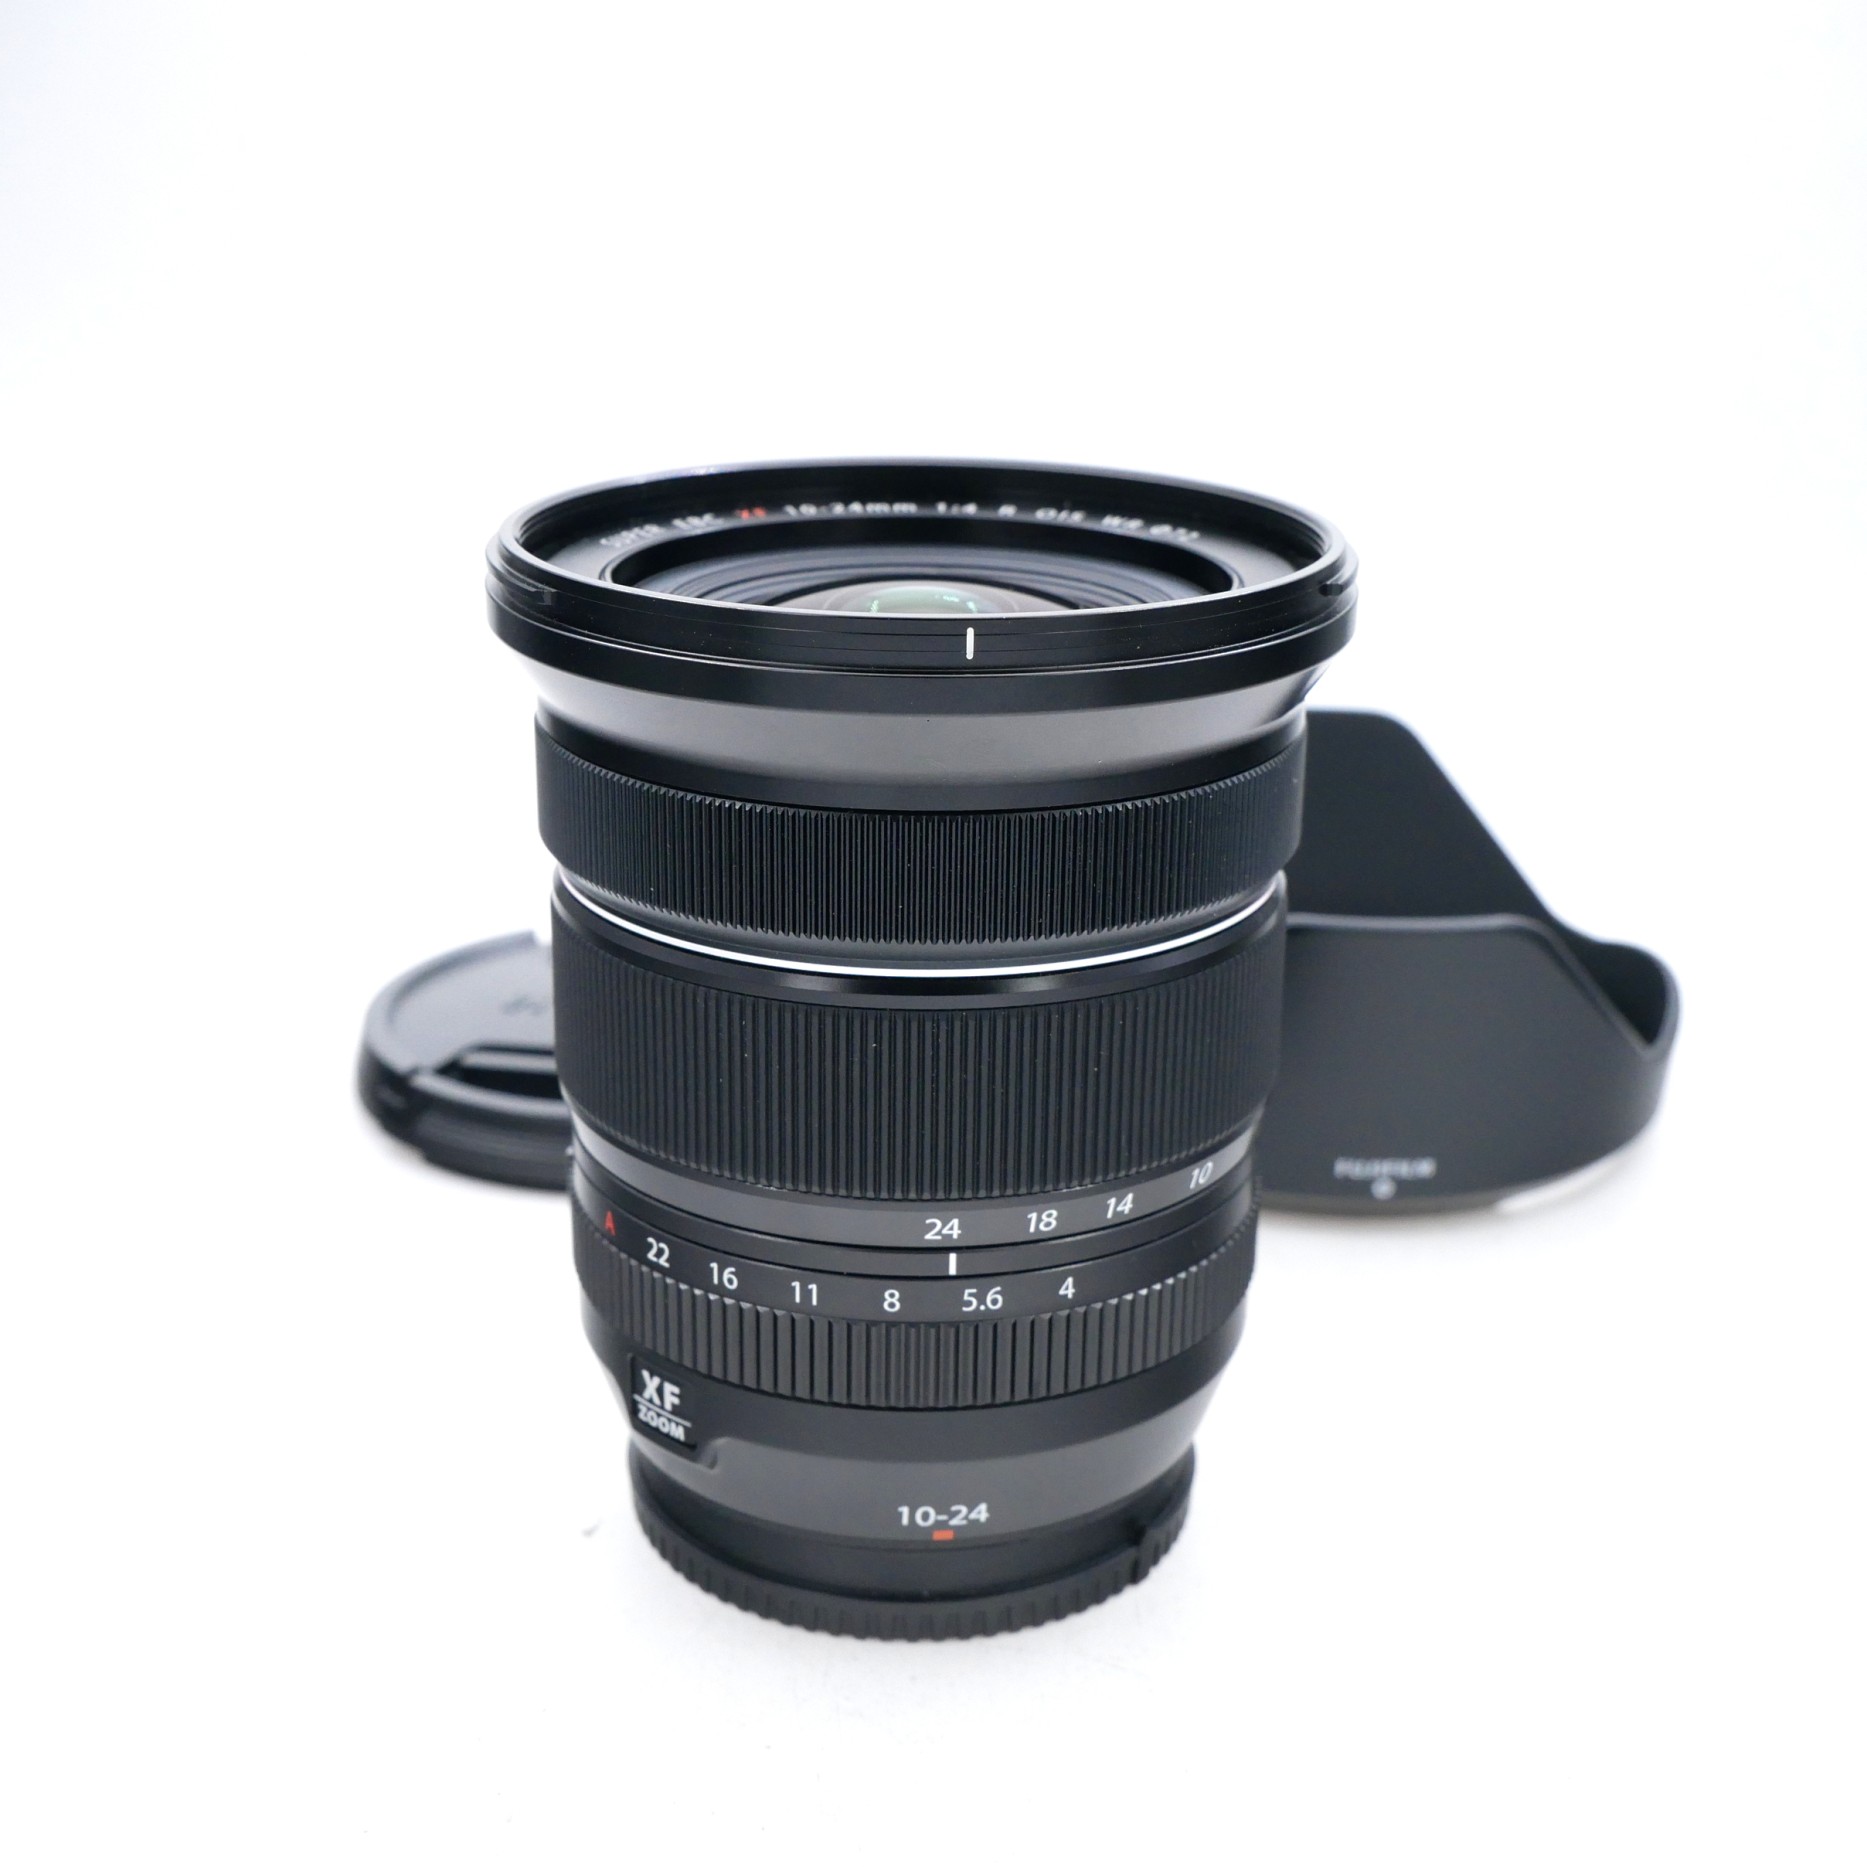   Fujifilm XF 10-24mm F4 R OIS WR Lens